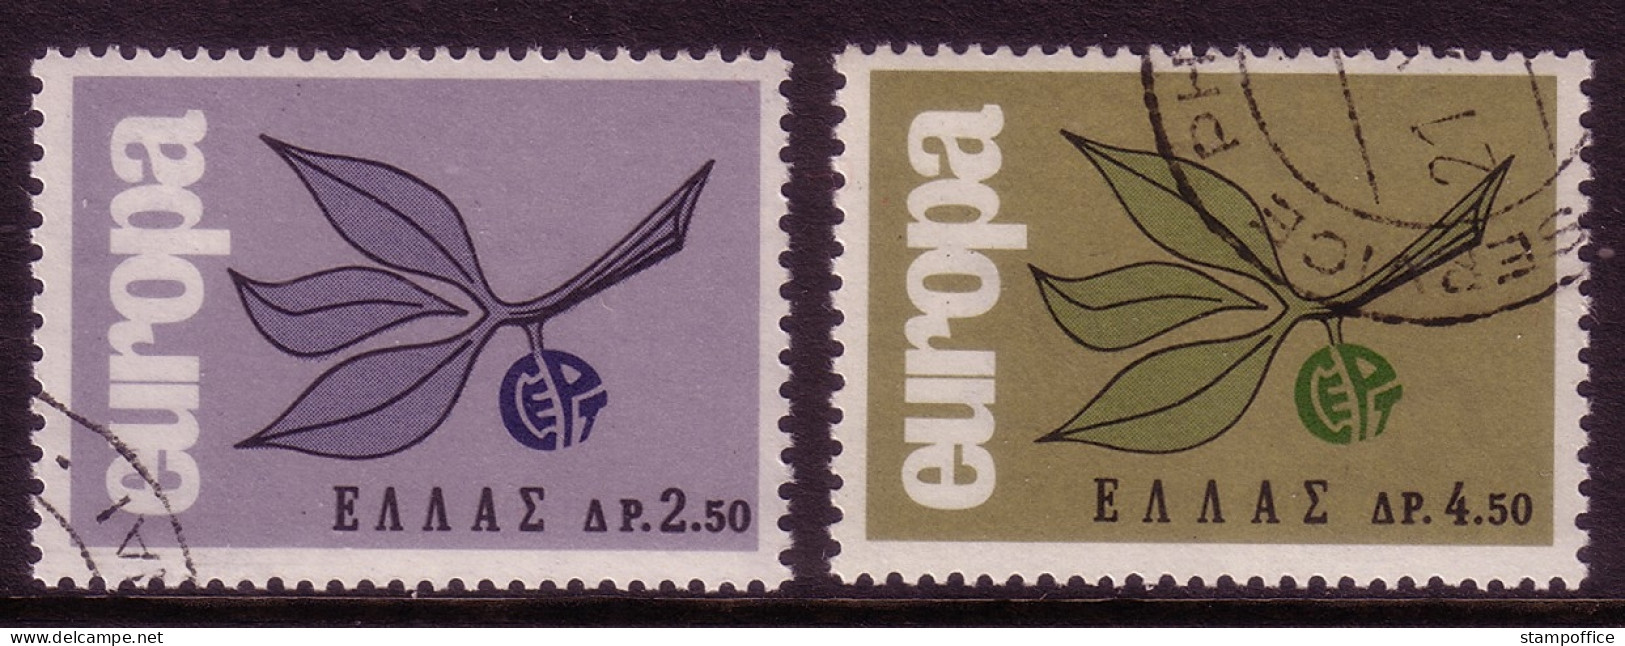 GRIECHENLAND MI-NR. 890-891 O CEPT 1965 ZWEIG - 1965